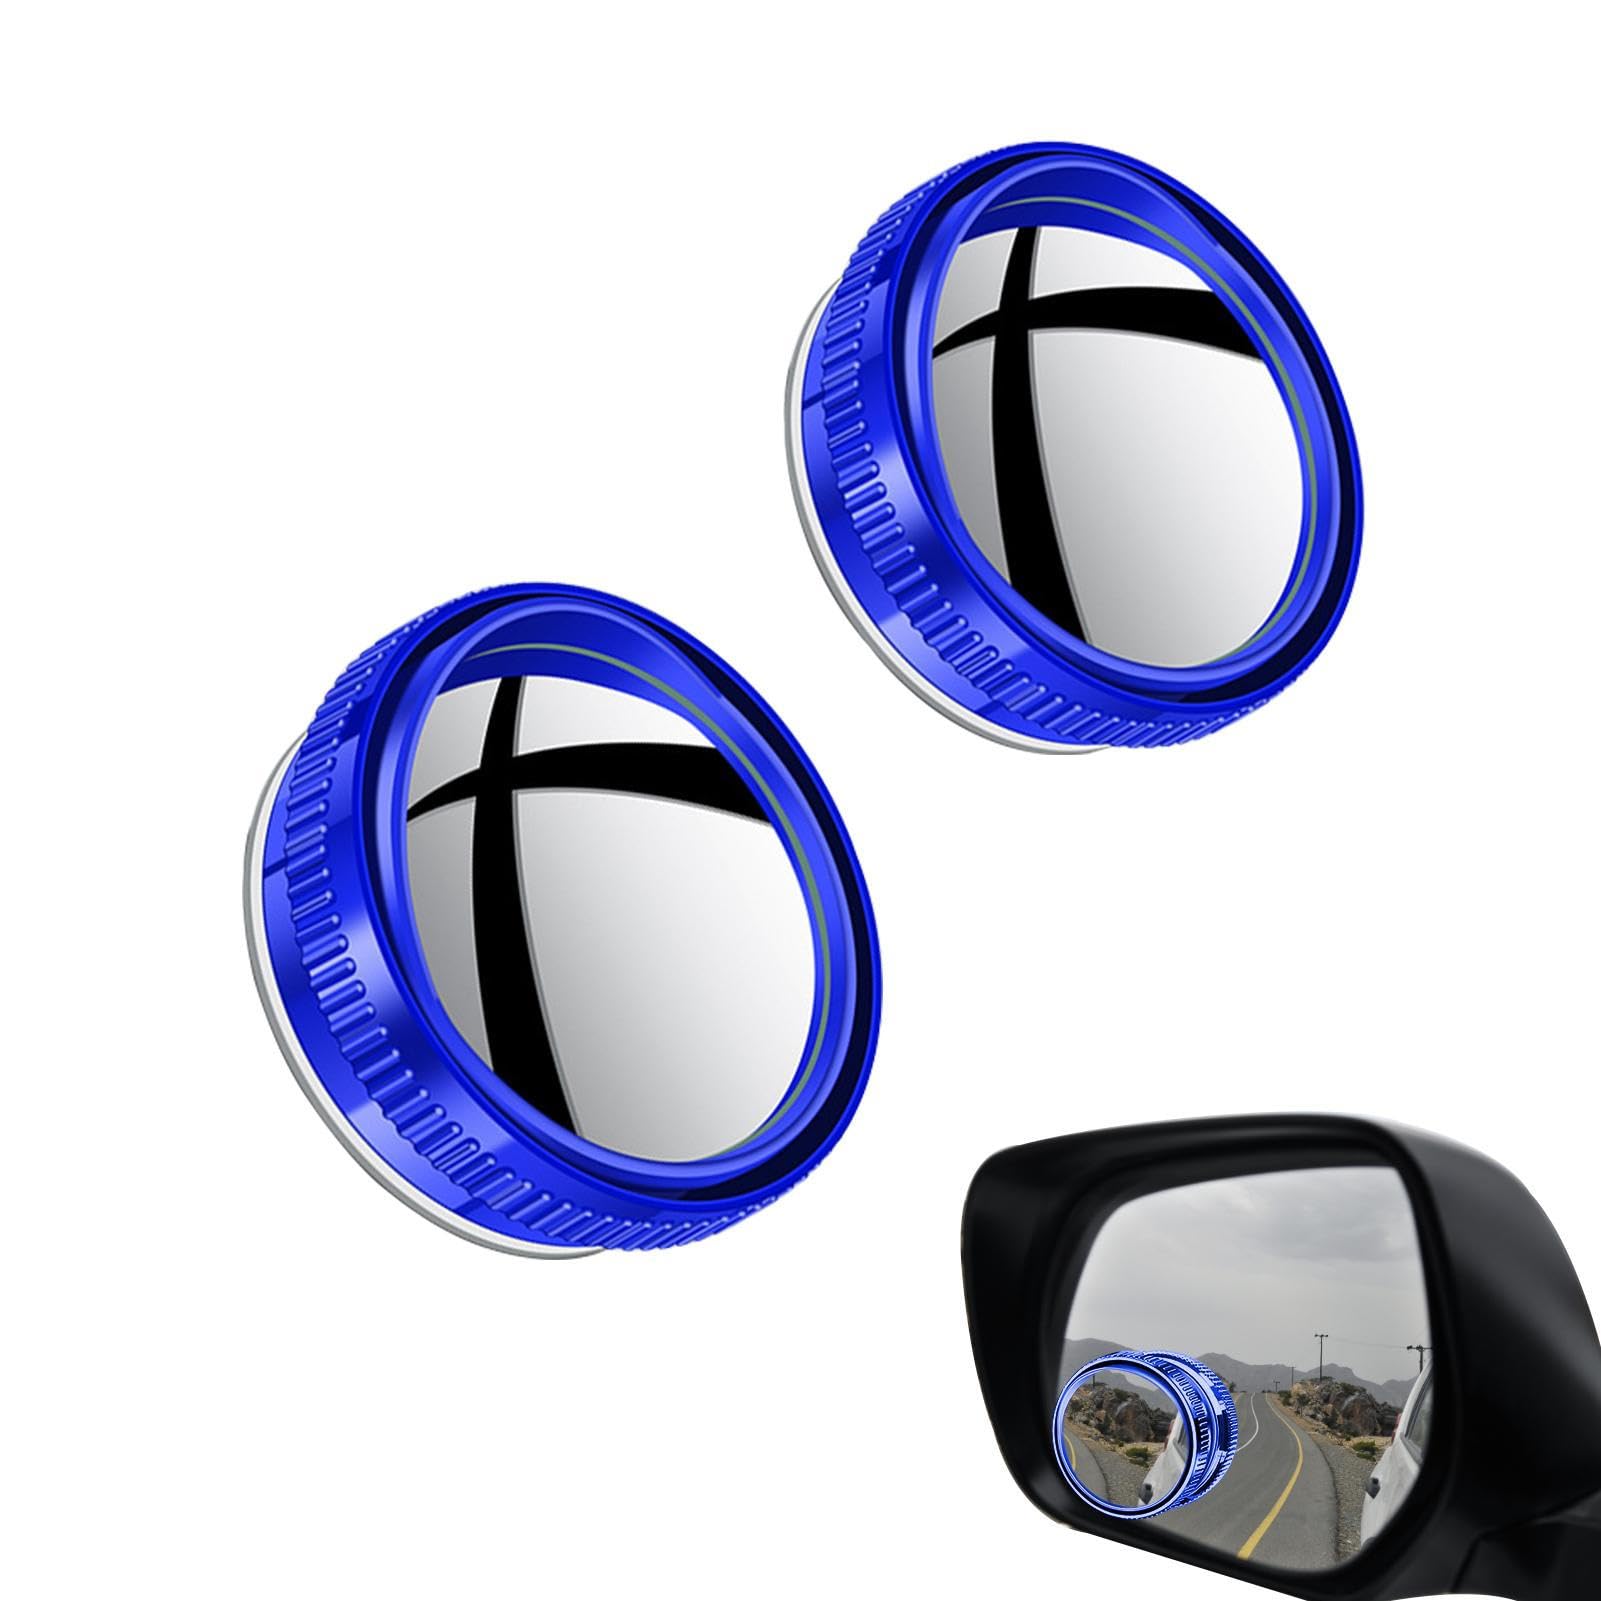 Toter-Winkel-Spiegel, Totwinkel Spiegel Für Auto, Verstellbarer Weitwinkelspiegel Selbstklebende Blindspiegel Für Autospiegel, 2 Stück von Aznever